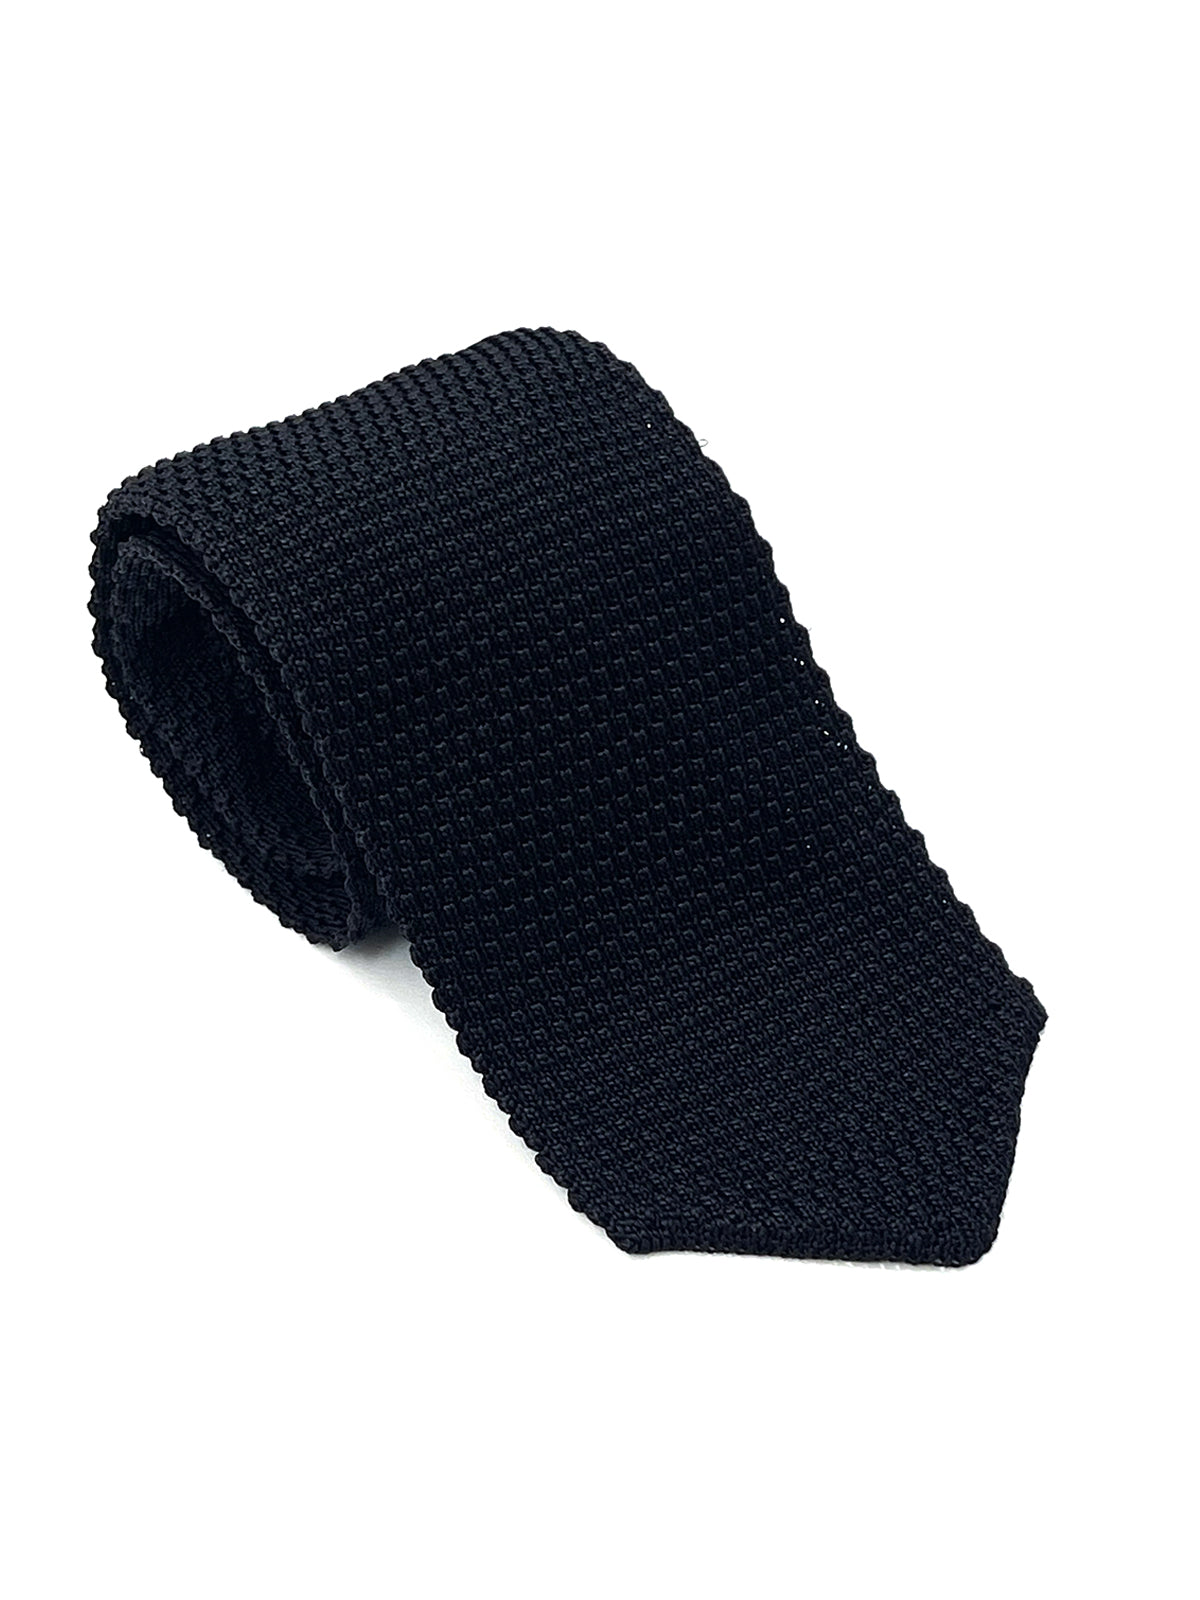 Black Knitted Silk Tie